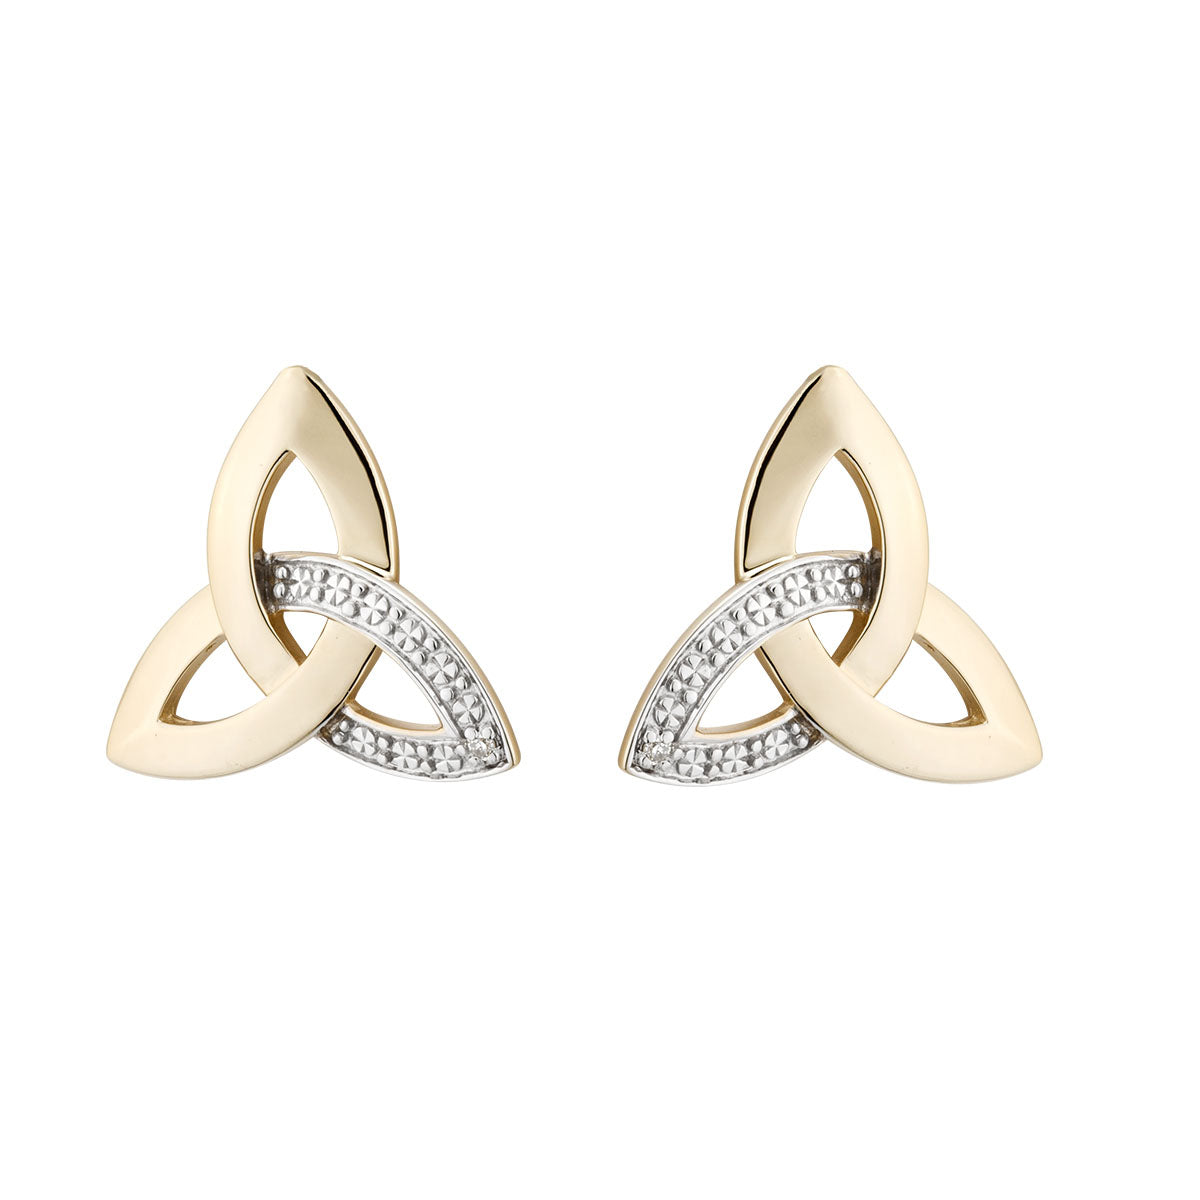 10k gold diamond trinity knot earrings s33990 from Solvar